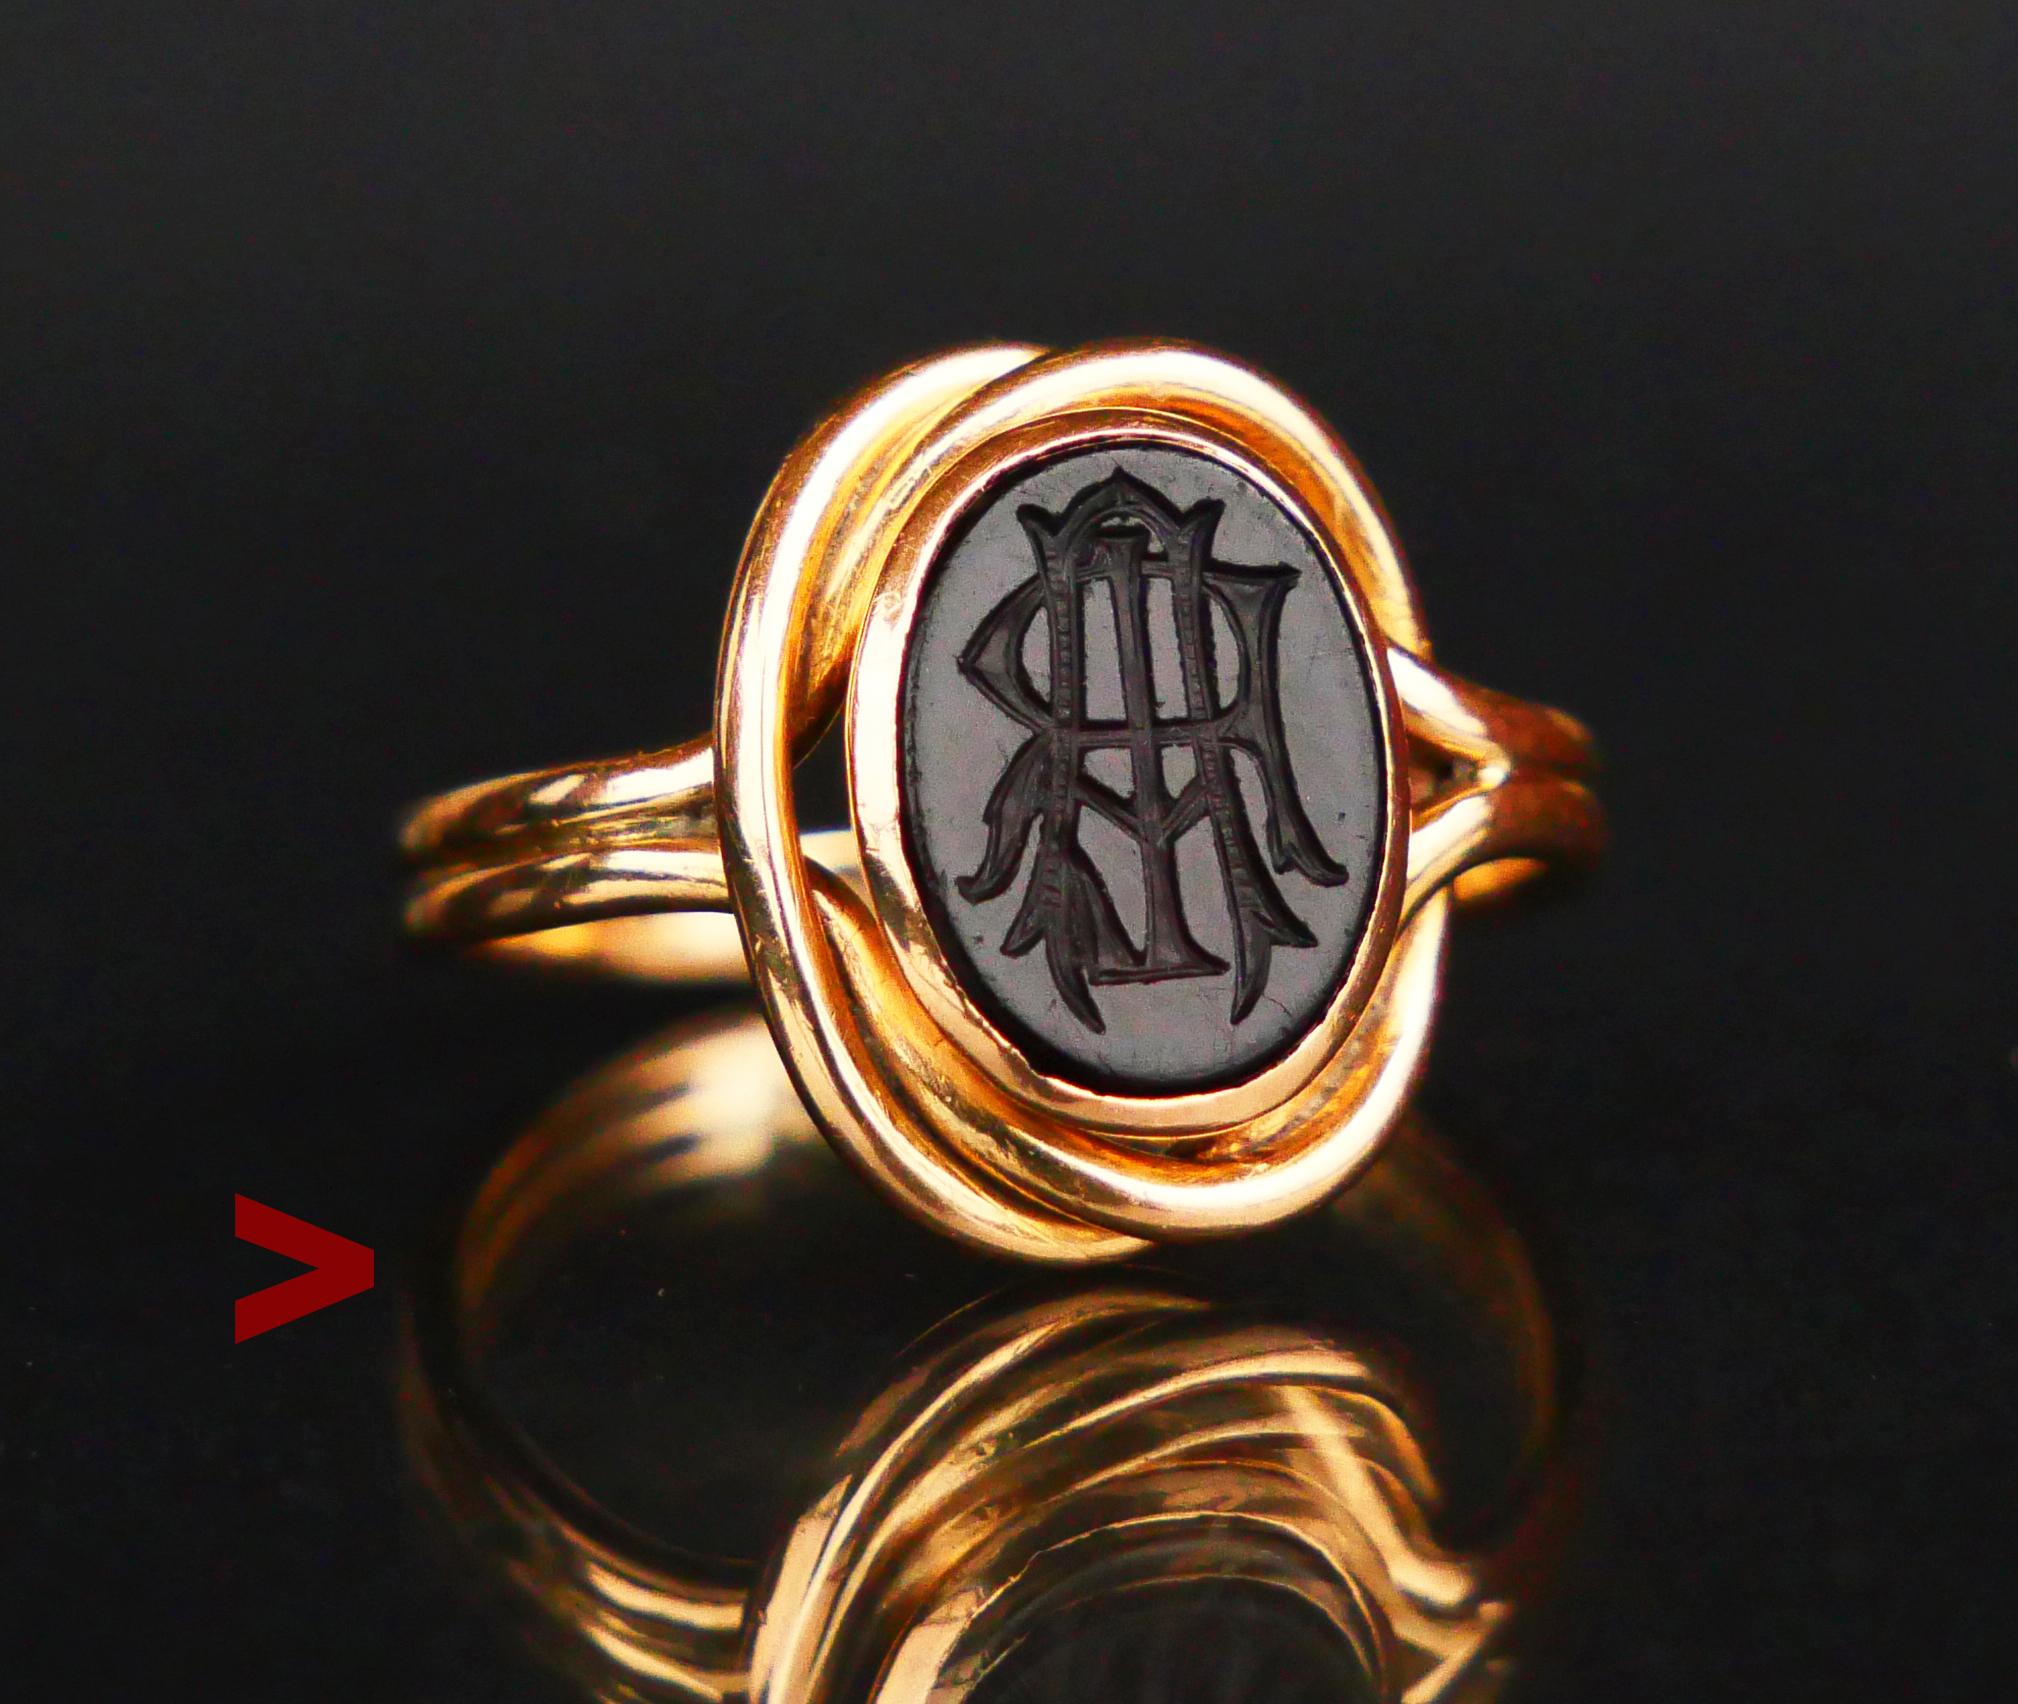 ϟignet Ring from distant 1917 with twisted double wire band adorned with bezel set polished plate of Red Onyx stone 10 mm x 8 mm x 2.8 mm / ca 3.5 ct. The crown measures 14 mm x 11 mm x 4 mm deep.

The design of this ring is unisex, it will look